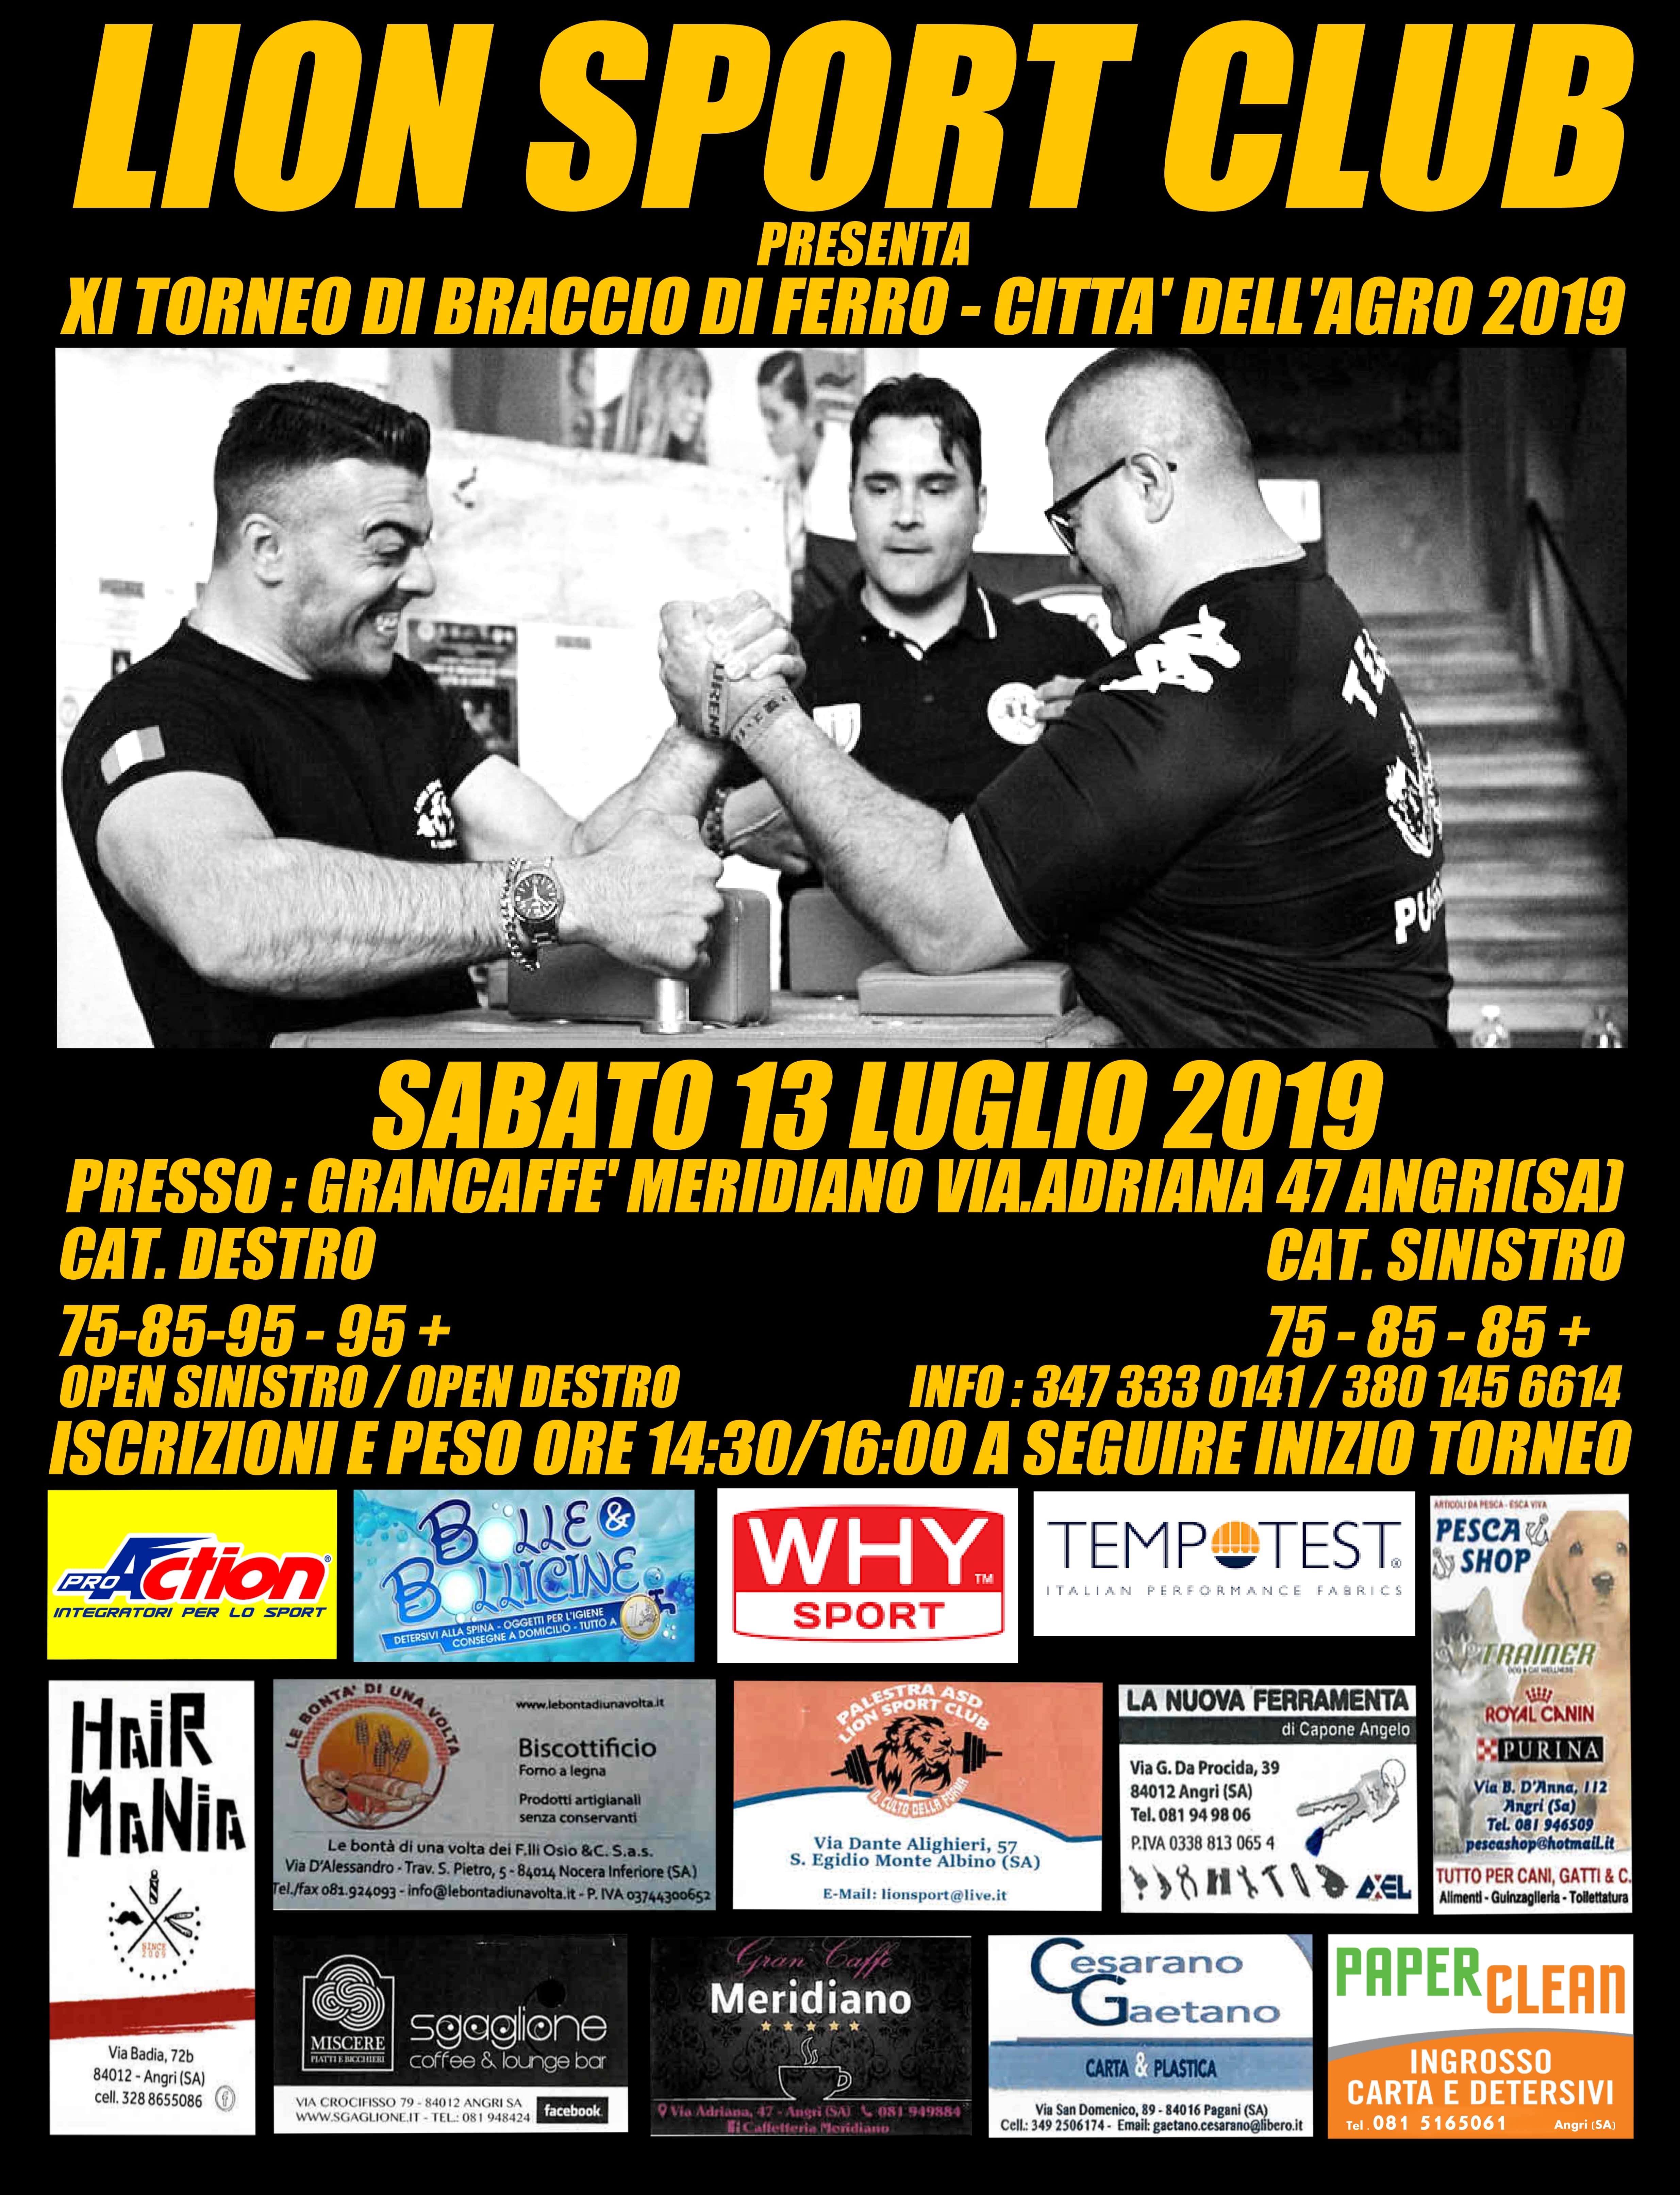 SBFI - Sezione Braccio di Ferro Italia- XI Trofeo città dell’Agro